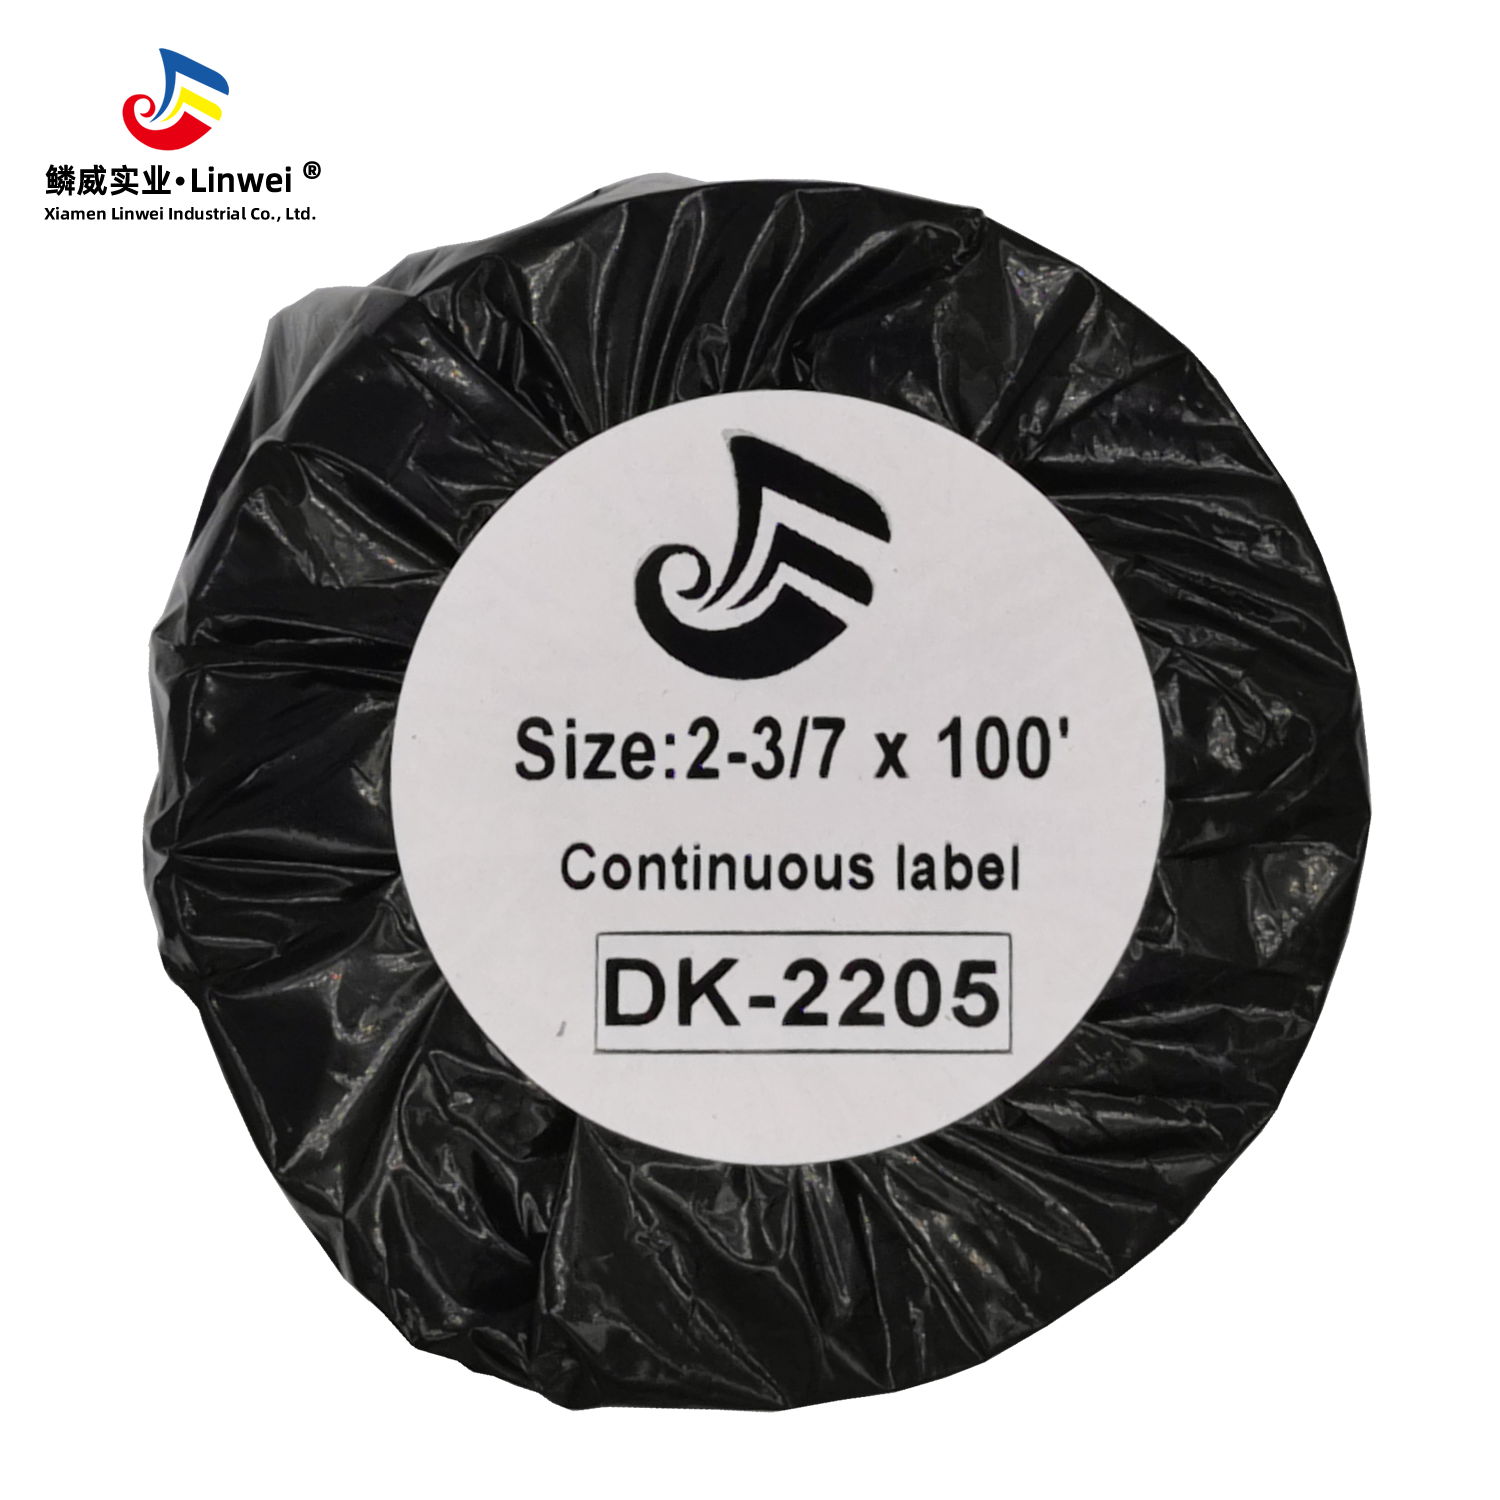 Compatible DK-2205 Continuous Length 2-3/7" x 100'(62mm x 30.48m) Replacement La